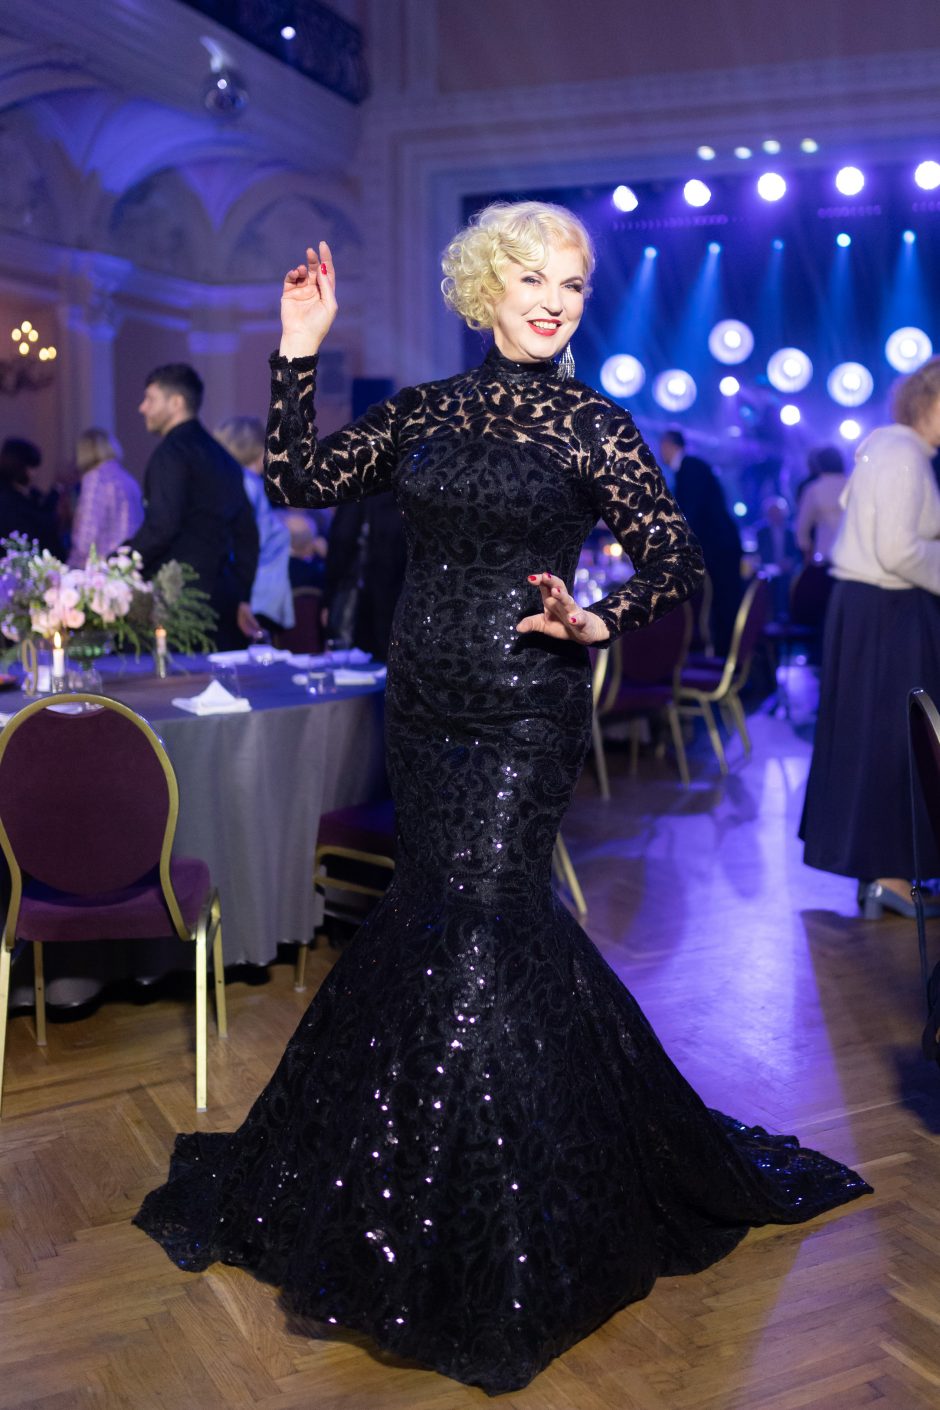 65-ąjį jubiliejų atšventusi aktorė N. Narmontaitė: kiekviena diena man – pasaulio stebuklas 